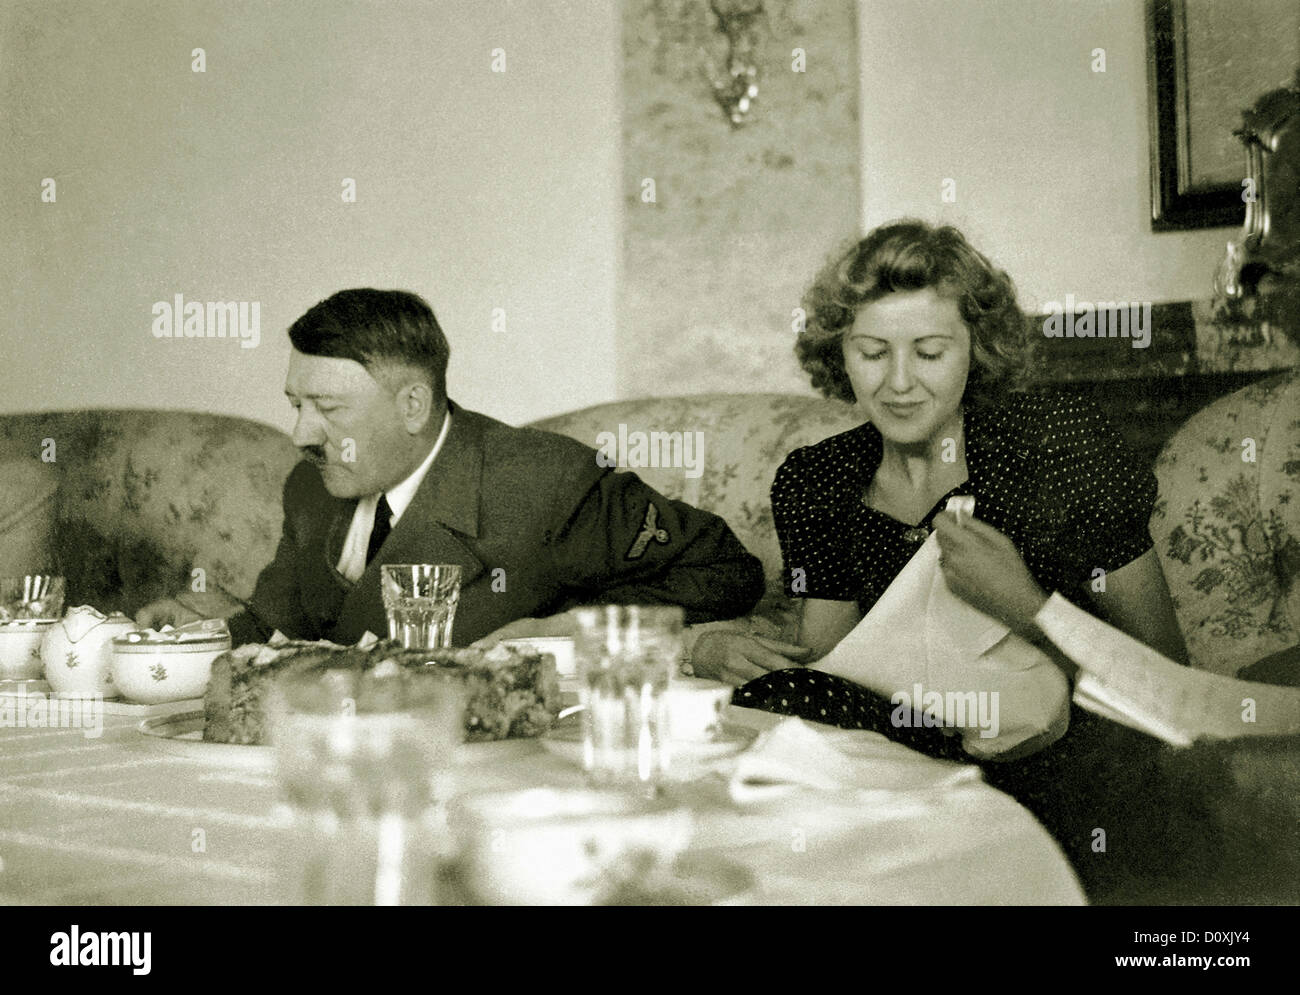 Eva Braun, Adolf Hitler, Braun, comida, Teehaus, Moslahnerkopf, Berchtesgaden, Alemania, 1942, esposa, amante, Adolf Hitler, mundo Foto de stock